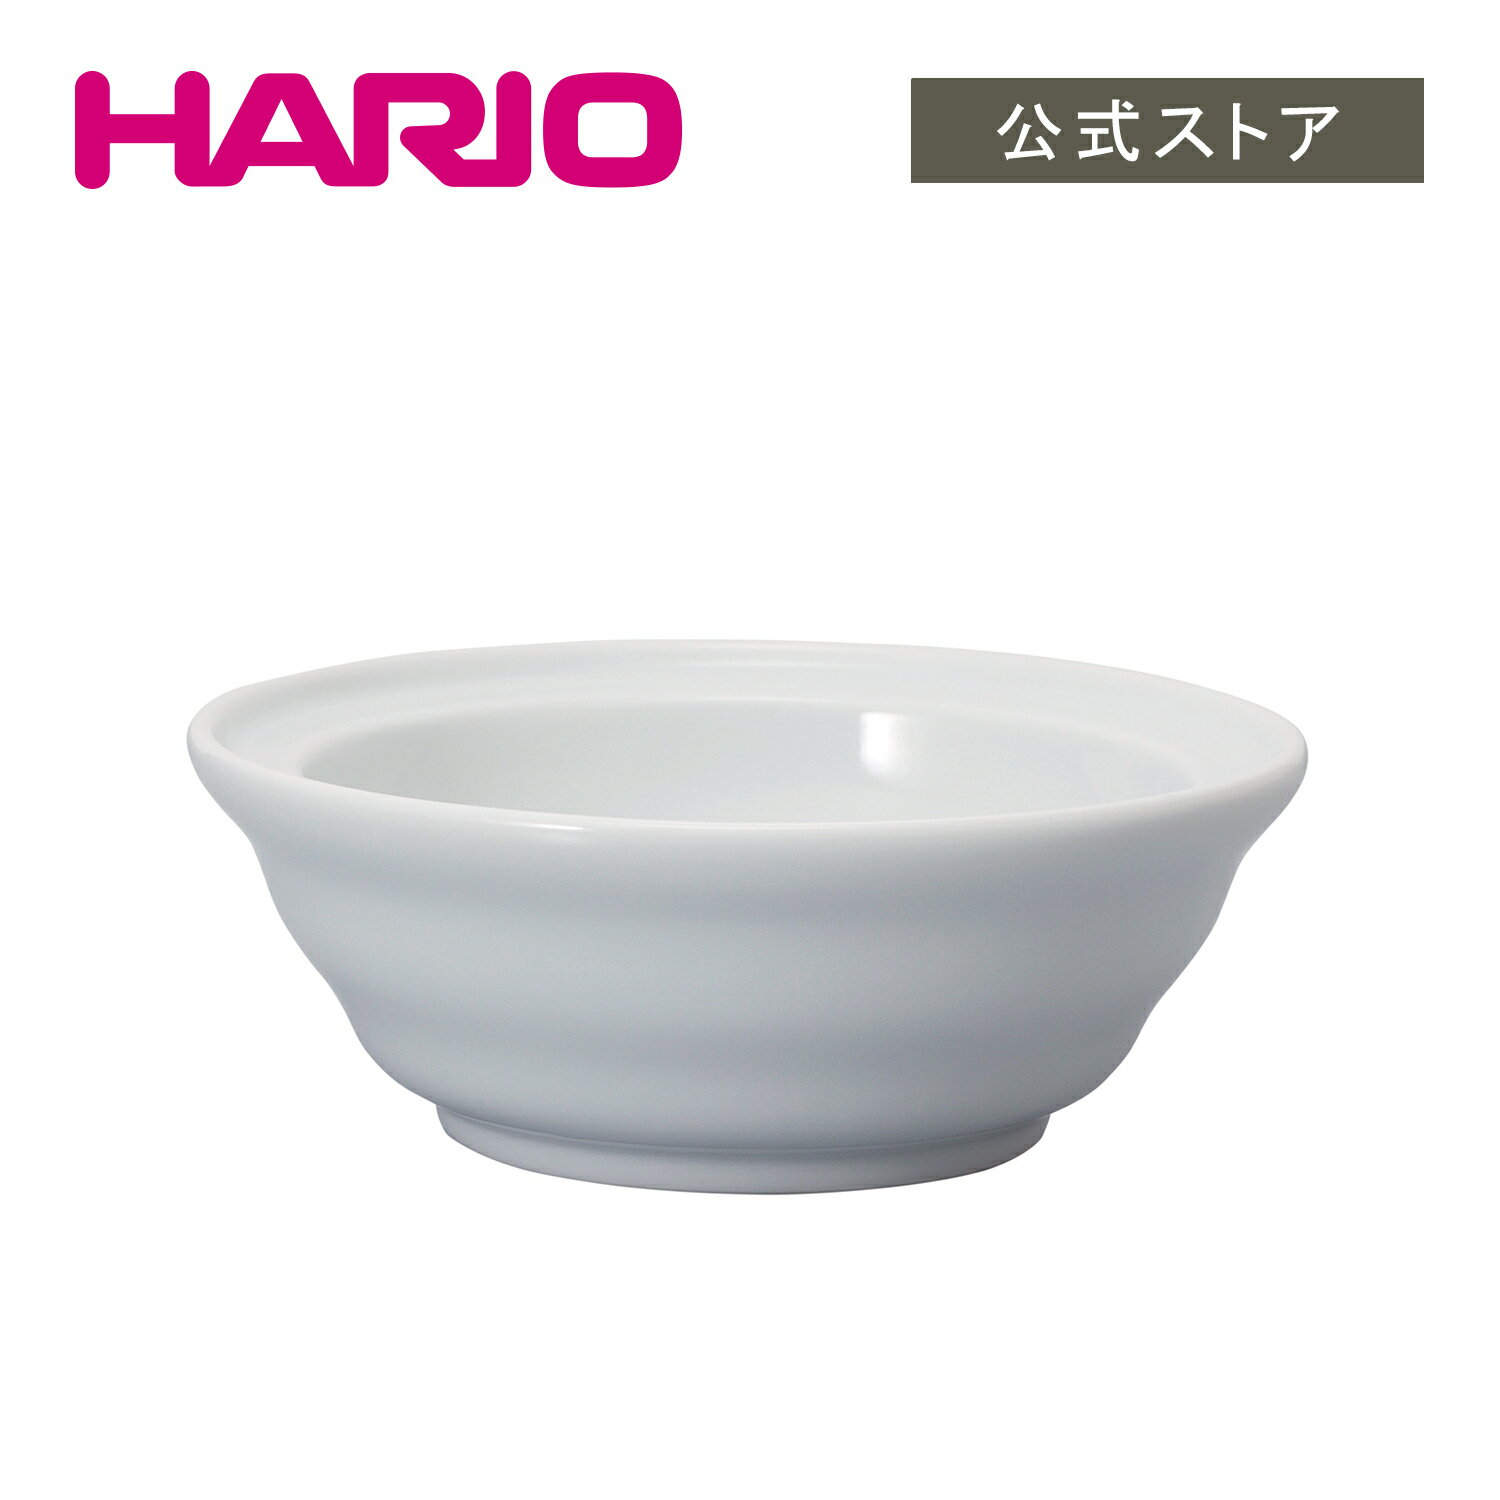 【公式ショップ】HARIO V60 ドリップトレイ HARIO ハリオ コーヒー ドリッパー置き 陶器 皿